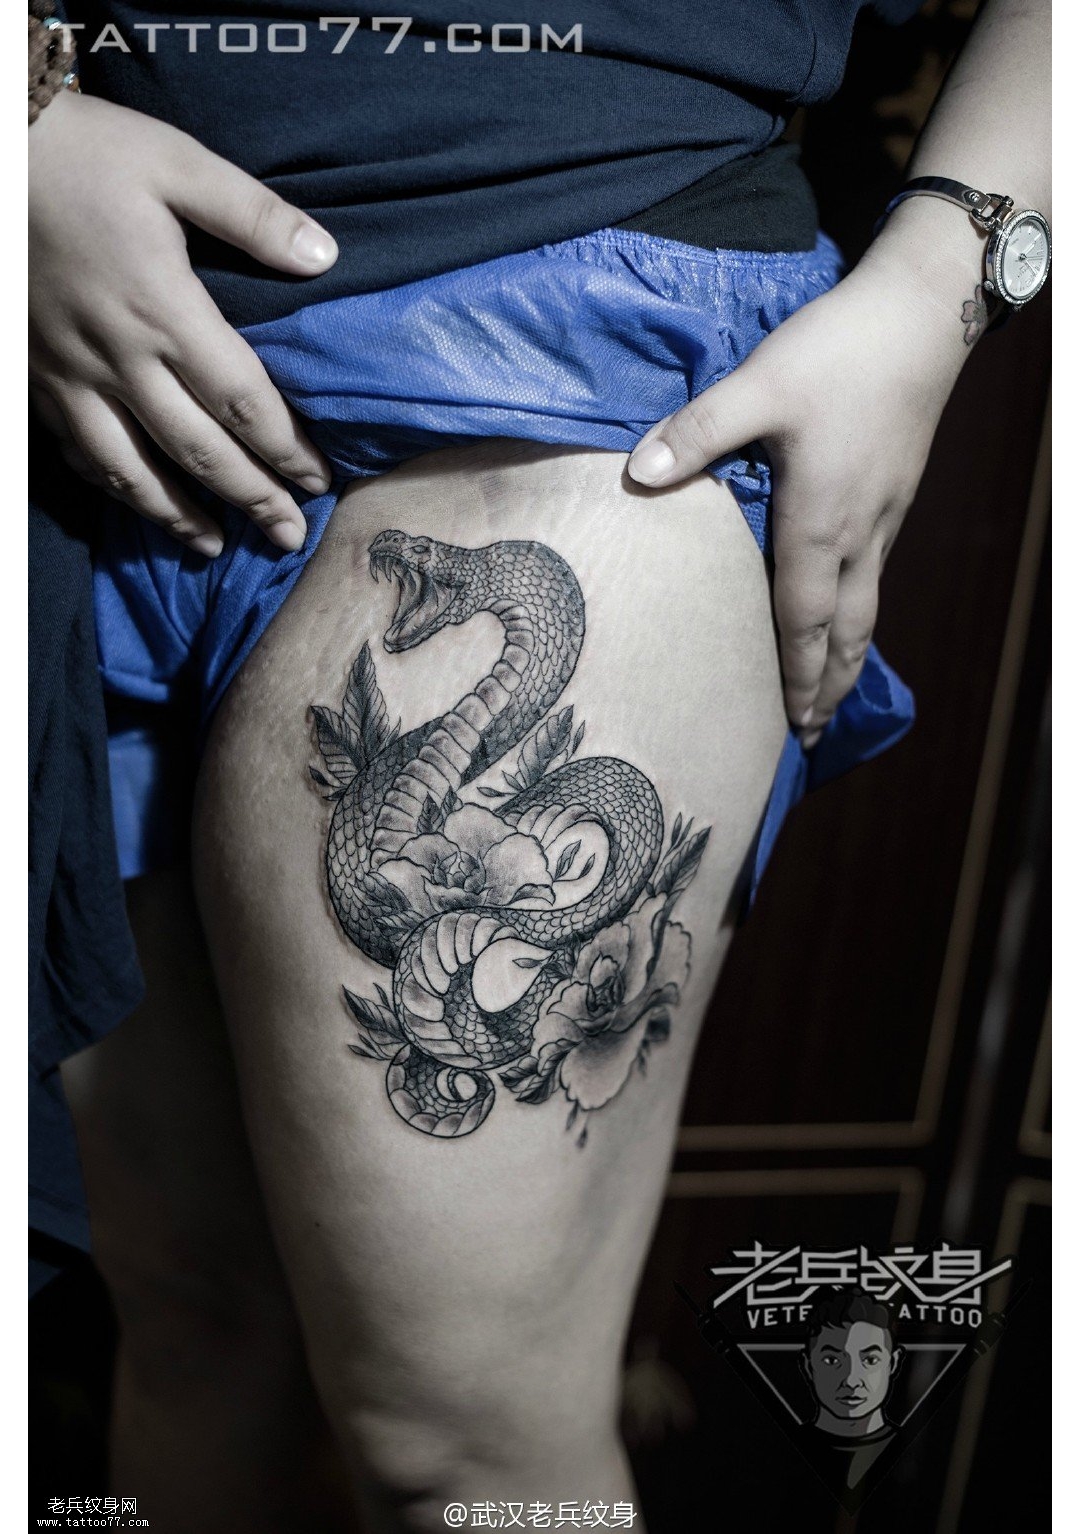 大腿牡丹蛇纹身图案作品